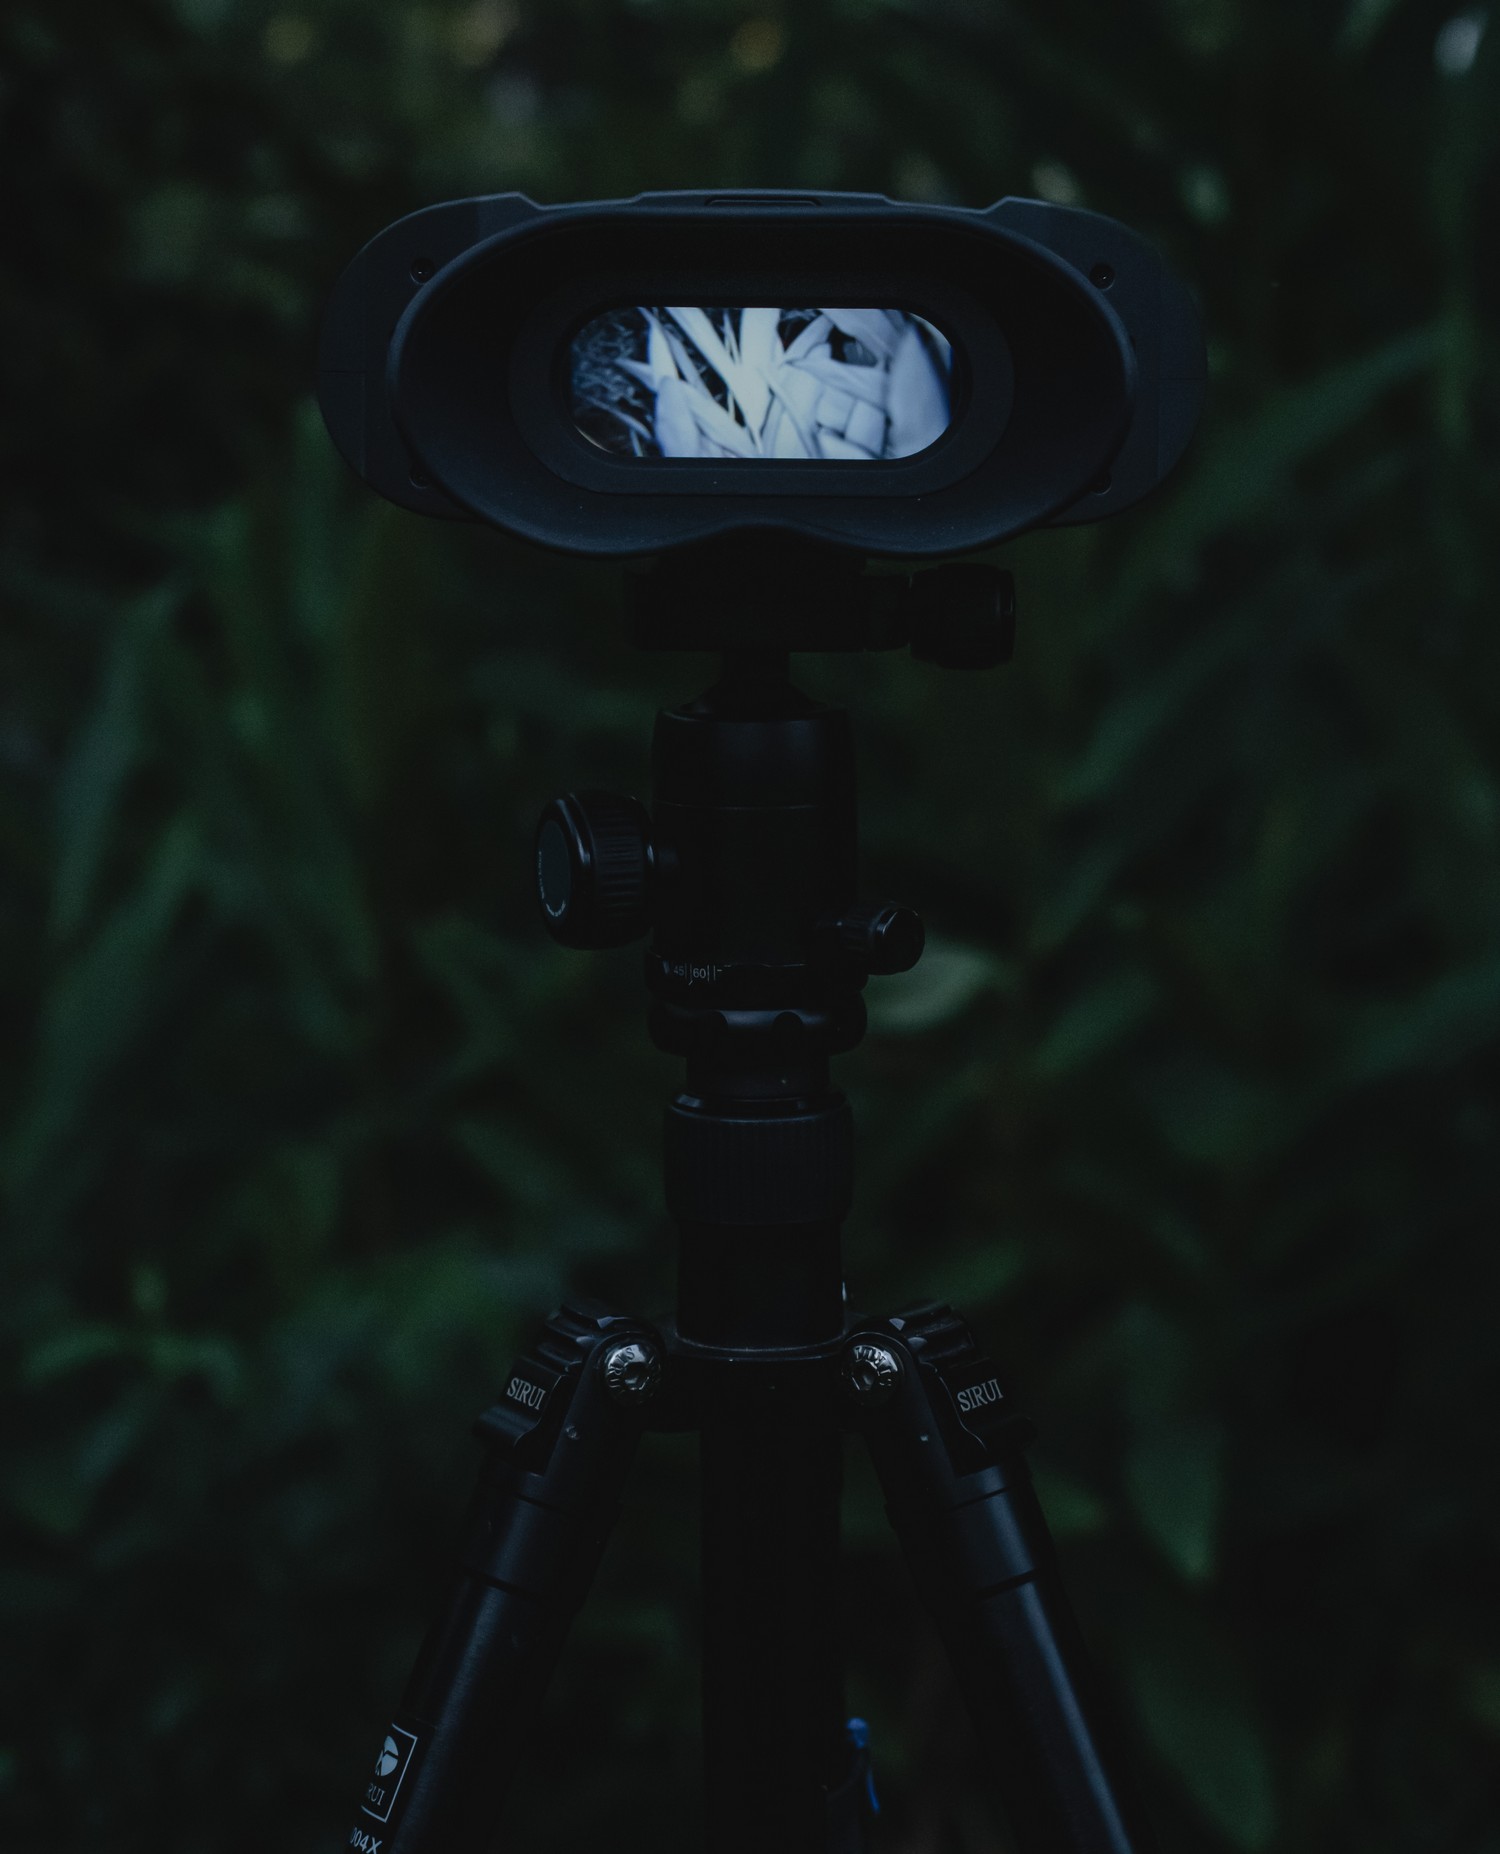 الرؤية الليلية NVB 200 - التبديل التلقائي للوضع المزدوج ليلا ونهارا